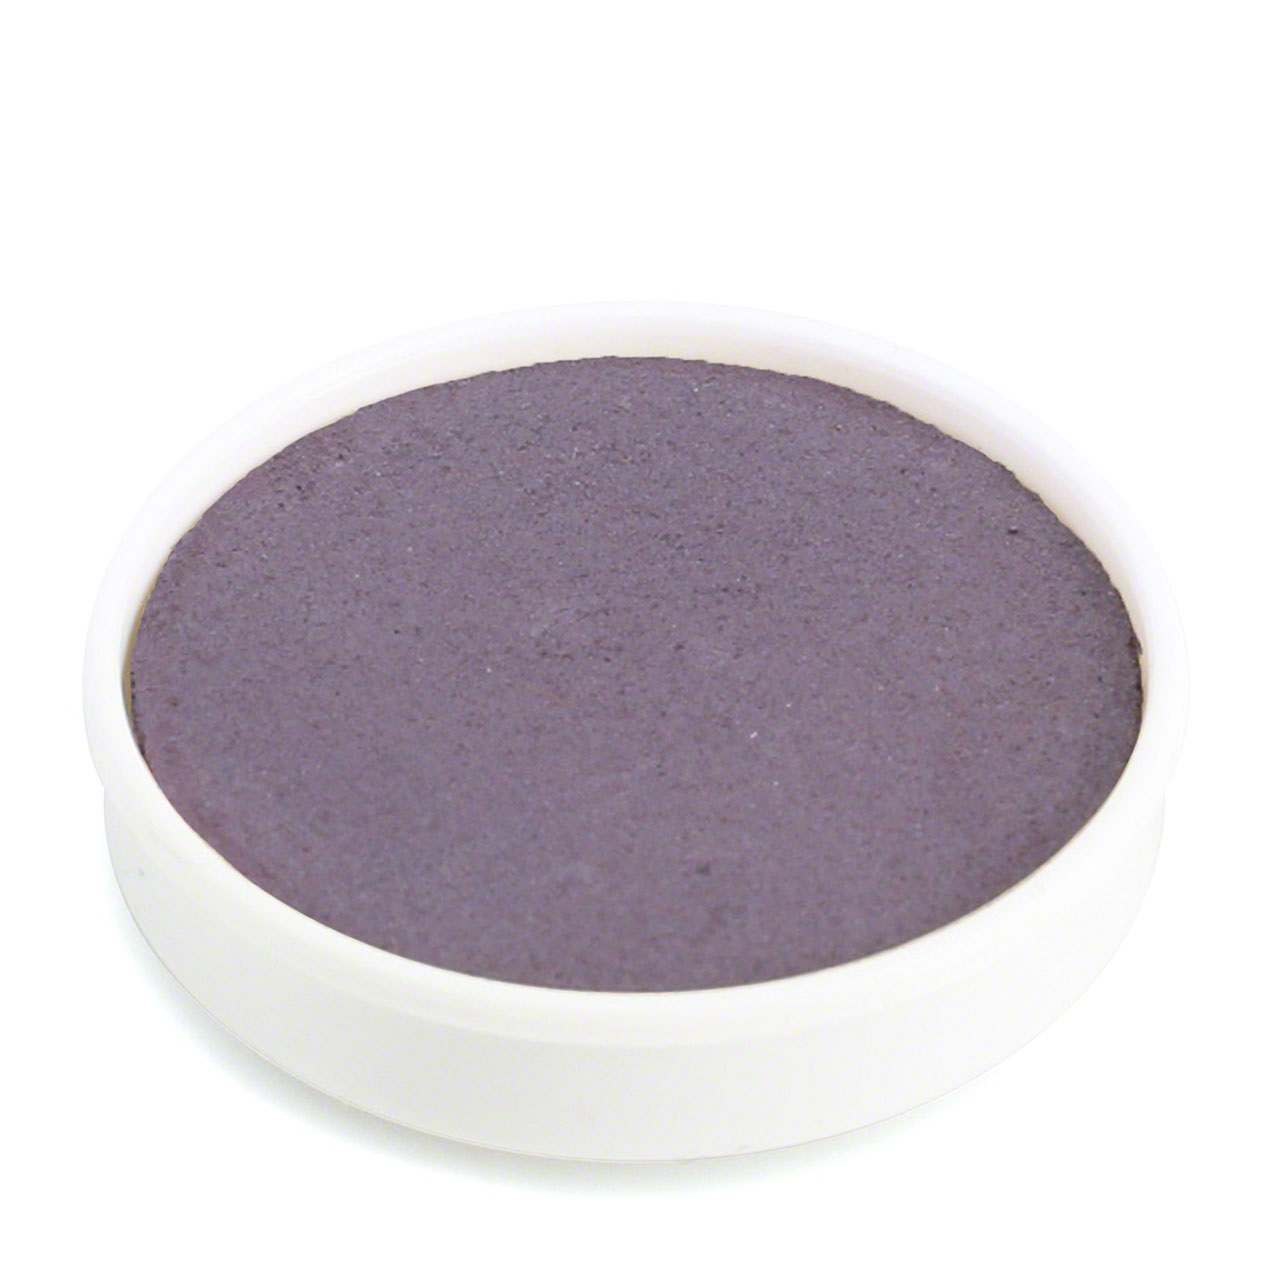 Farbtablette violett – Wasserfarben Ersatzfarben